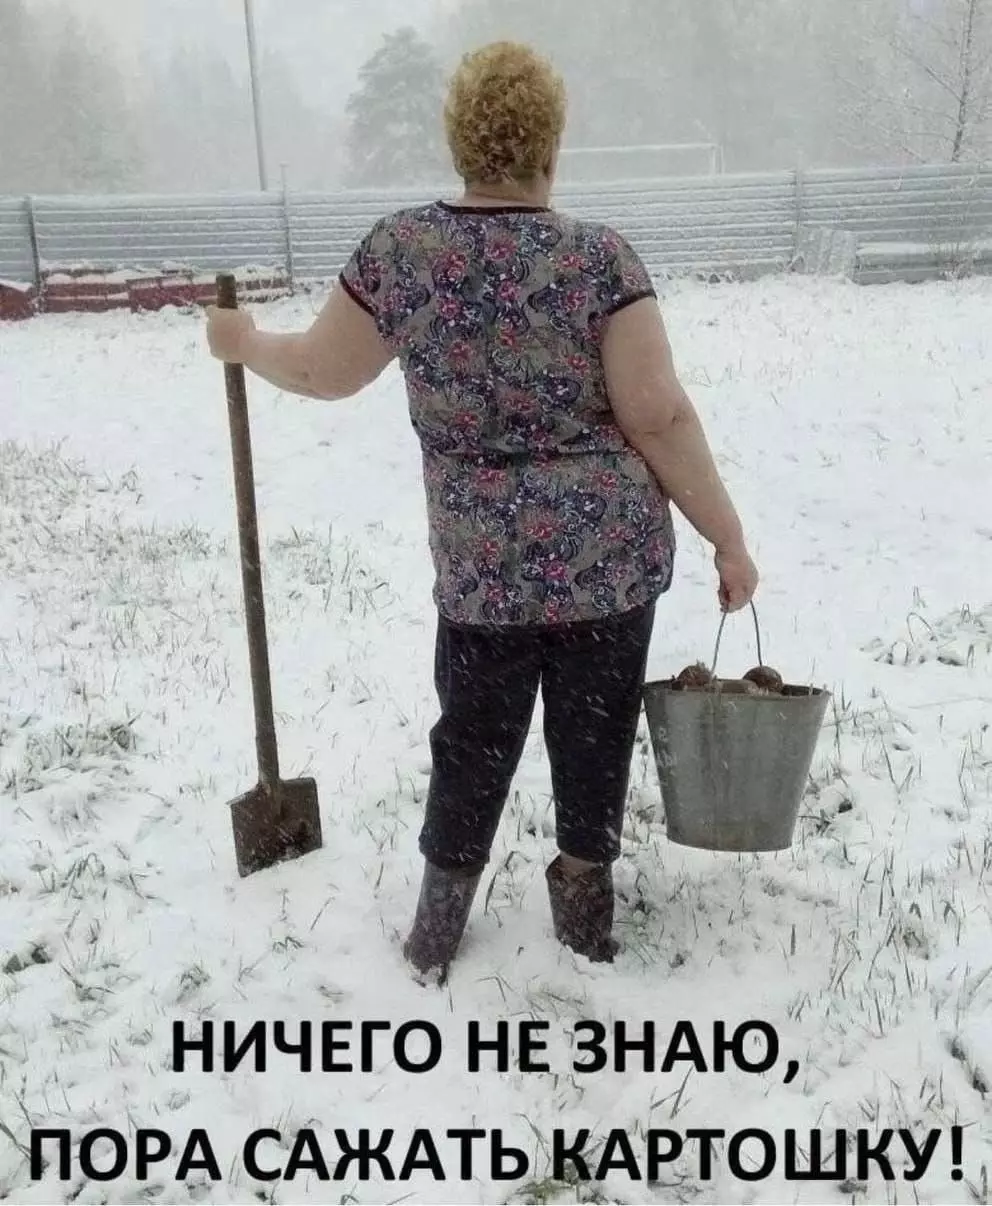 В некоторых регионах России в начале мая впервые за много лет установился снежный покров.